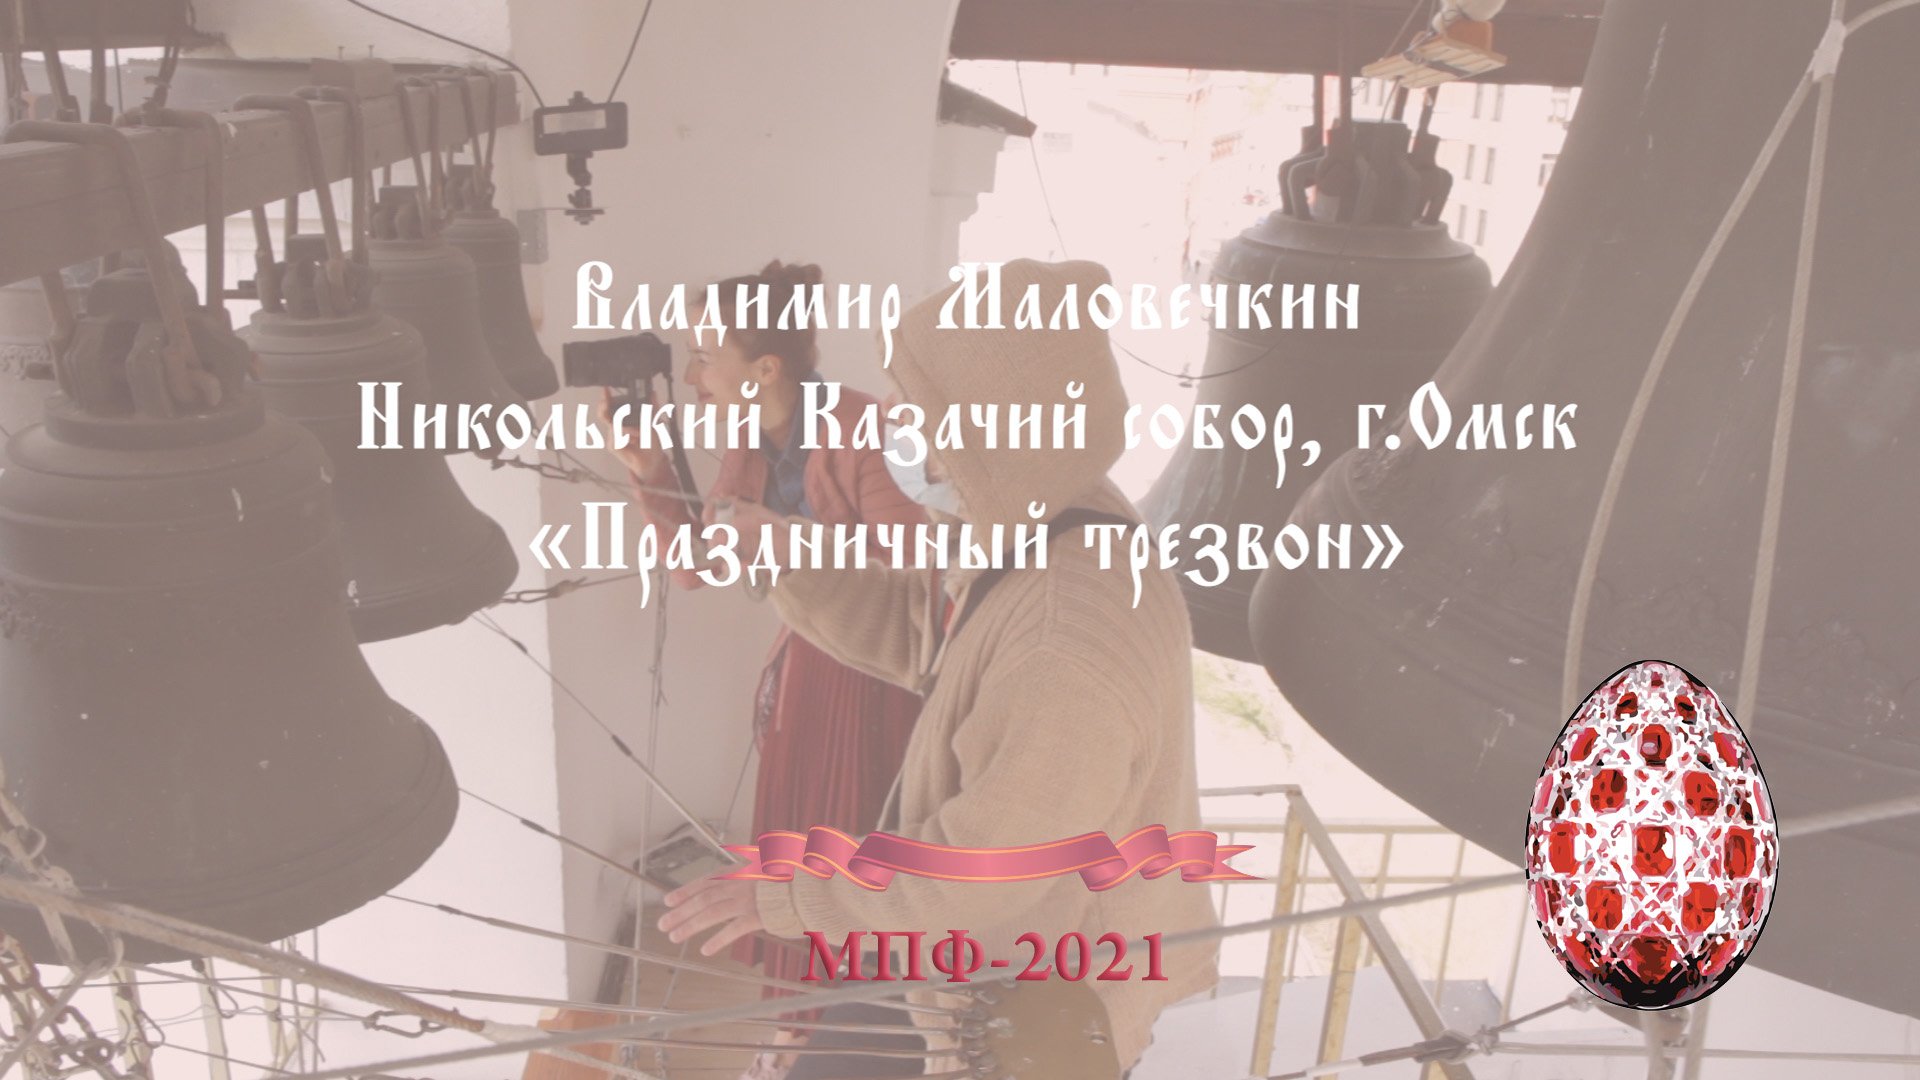 Праздничный трезвон (Festive bell ringing), фрагмент, звонарь Владимир Маловечкин, г.Омск